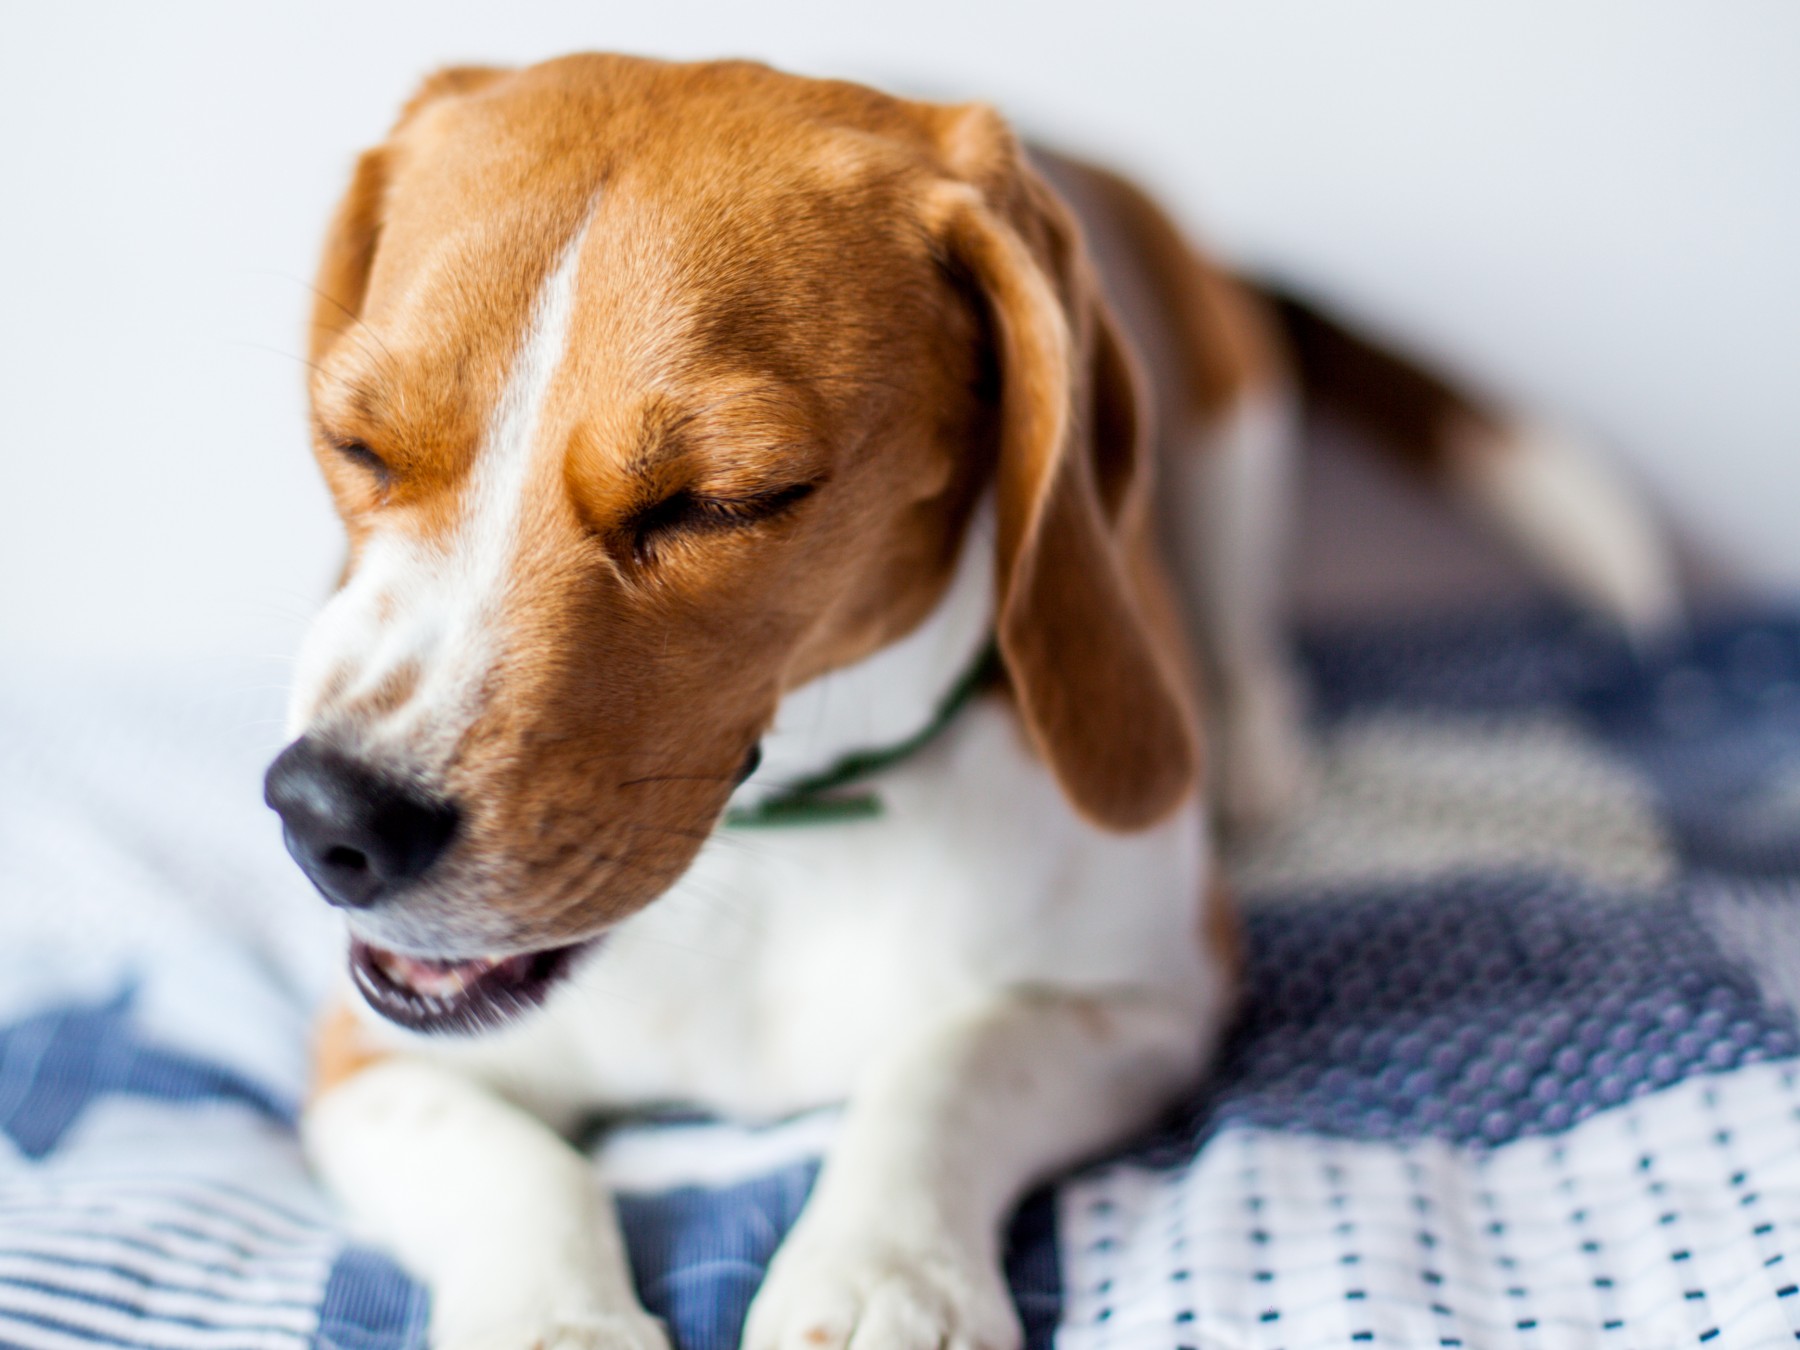 سرفه کردن سگ در واقع یک رفلکس حیاتی است که به عنوان یک مکانیسم دفاعی برای پاکسازی مجاری هوایی از مواد خارجی، تقویت سیستم موکوسیلیاری و محافظت از مجاری هوایی در برابر استنشاق ناخواسته مواد از حفره دهان عمل میکند. علی رغم این فواید اگر سرفه کردن سگ به صورت مزمن درآید، میتواند باعث آزار حیوان و آسیب به مخاط تنفسی بشود و در نهایت کیفیت زندگی سگ شما را به خطر بیاندازد.